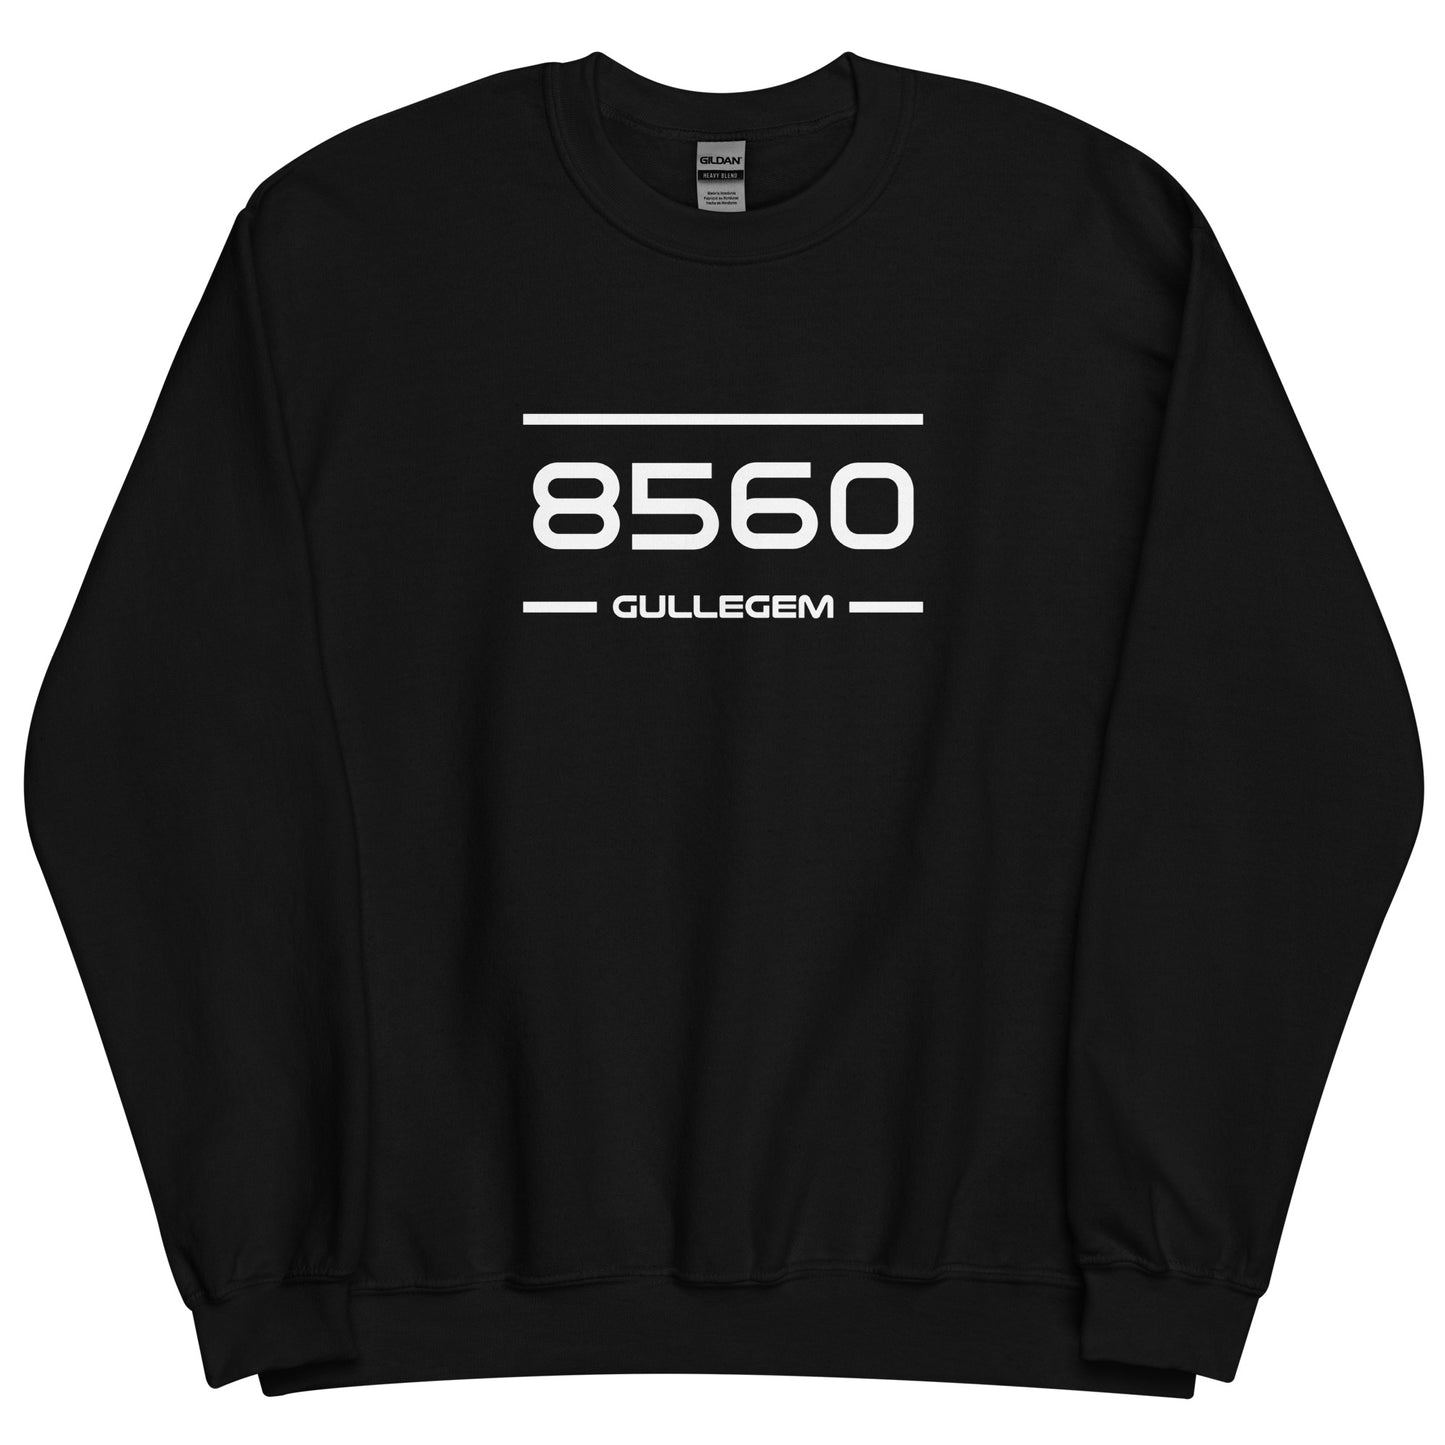 Sweater - 8560 - Gullegem (M/V)